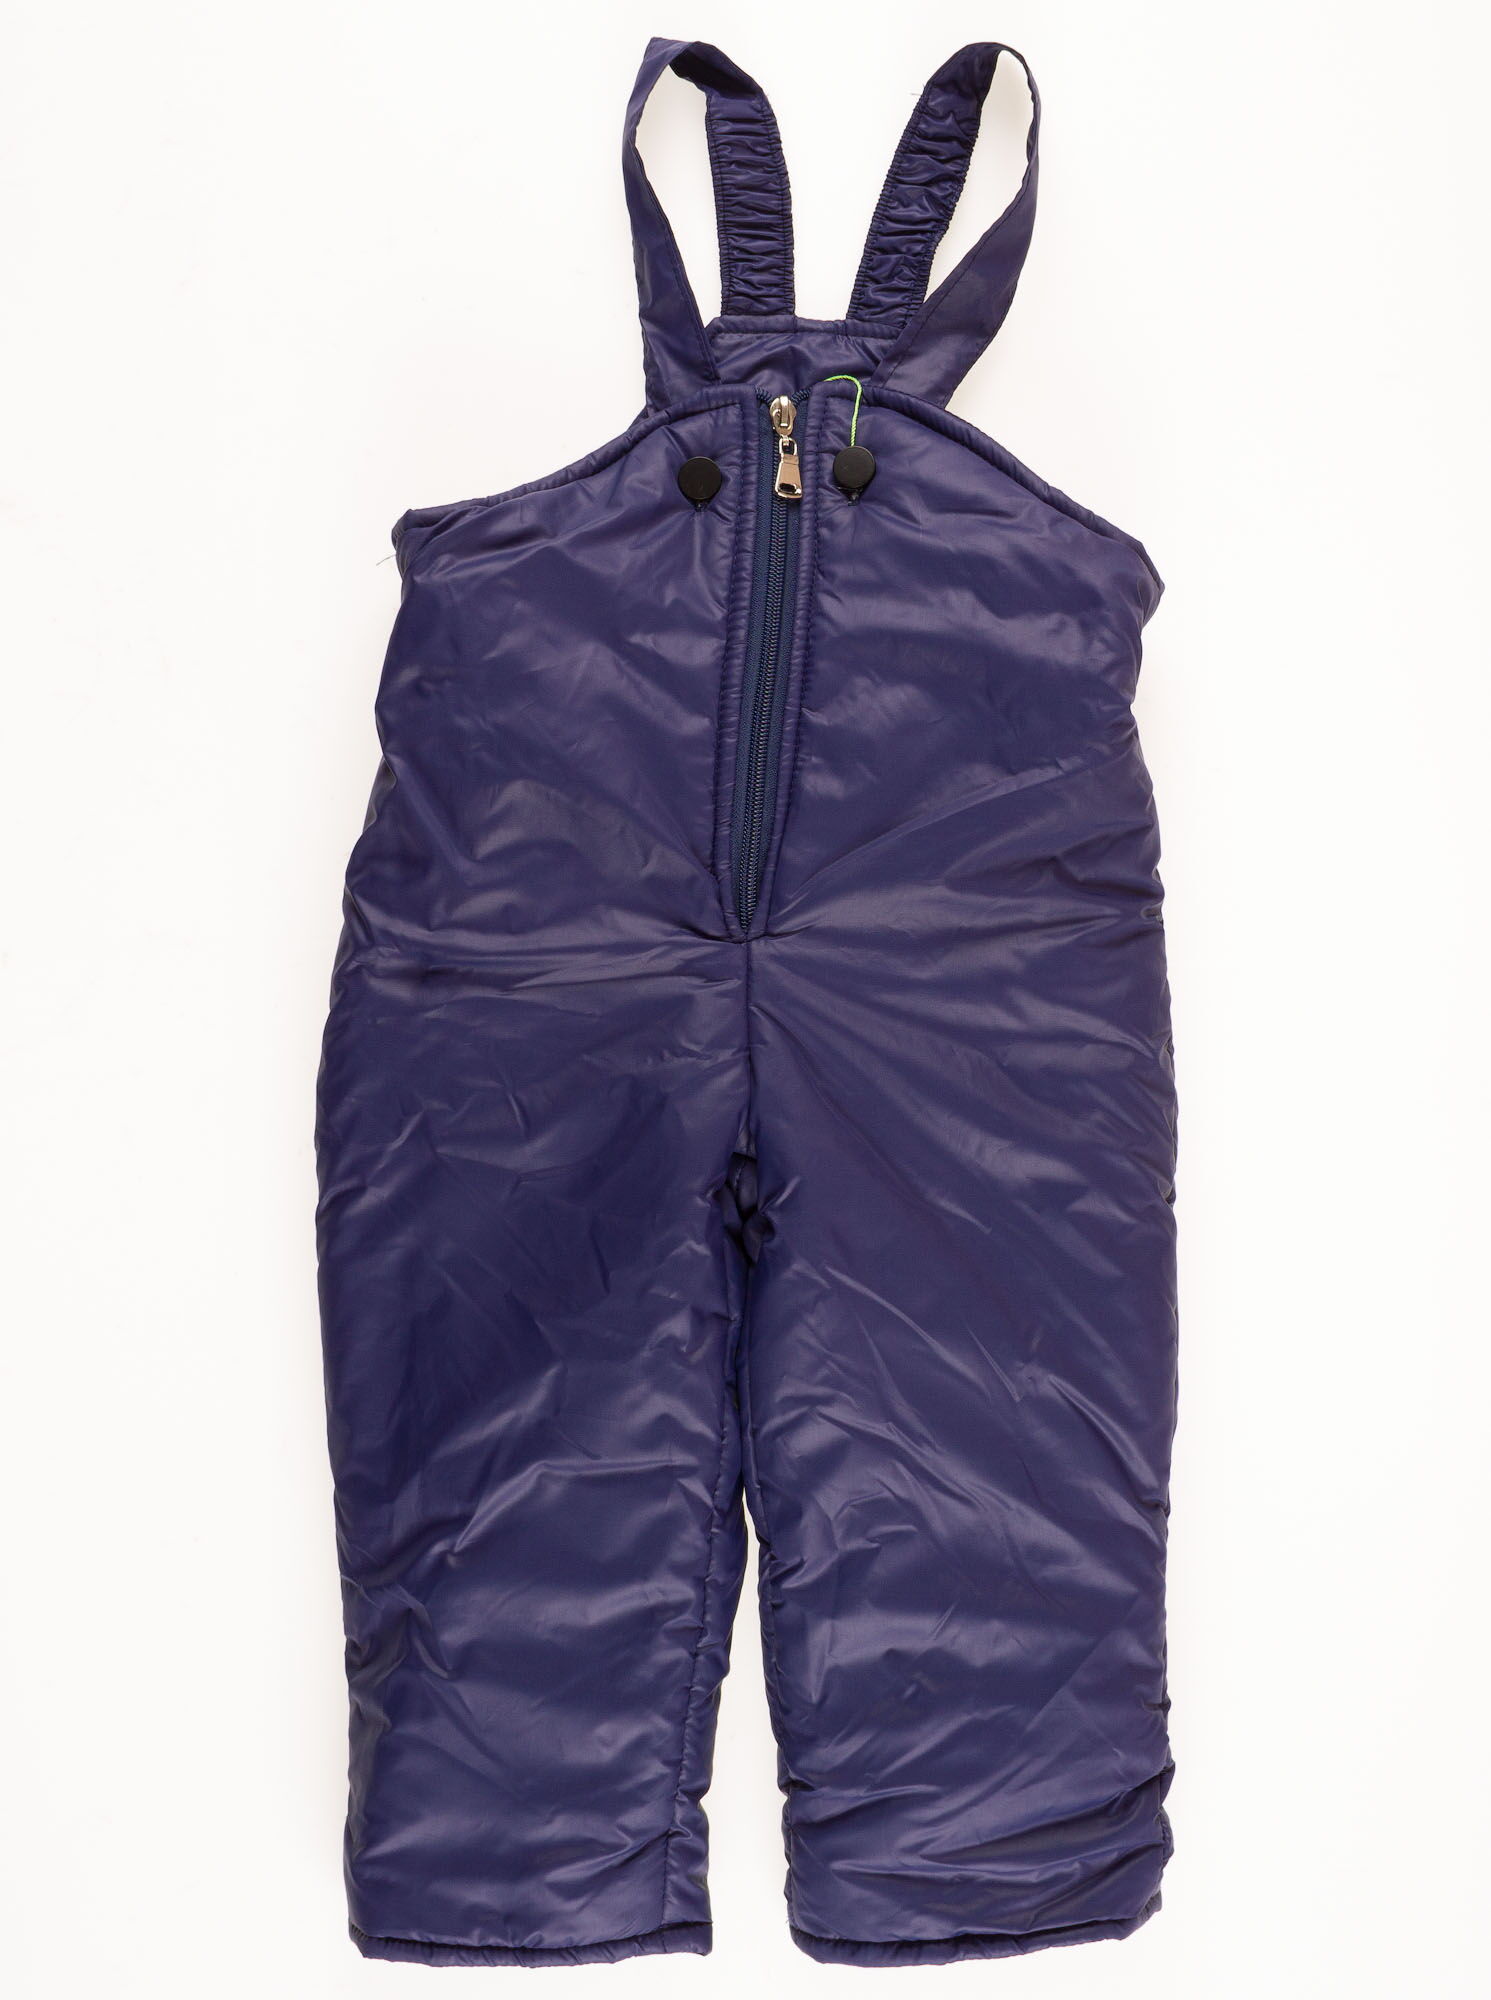 Комбинезон раздельный для девочки (куртка+штаны) ОДЯГАЙКО  темно-синий 20069/32018 - купить